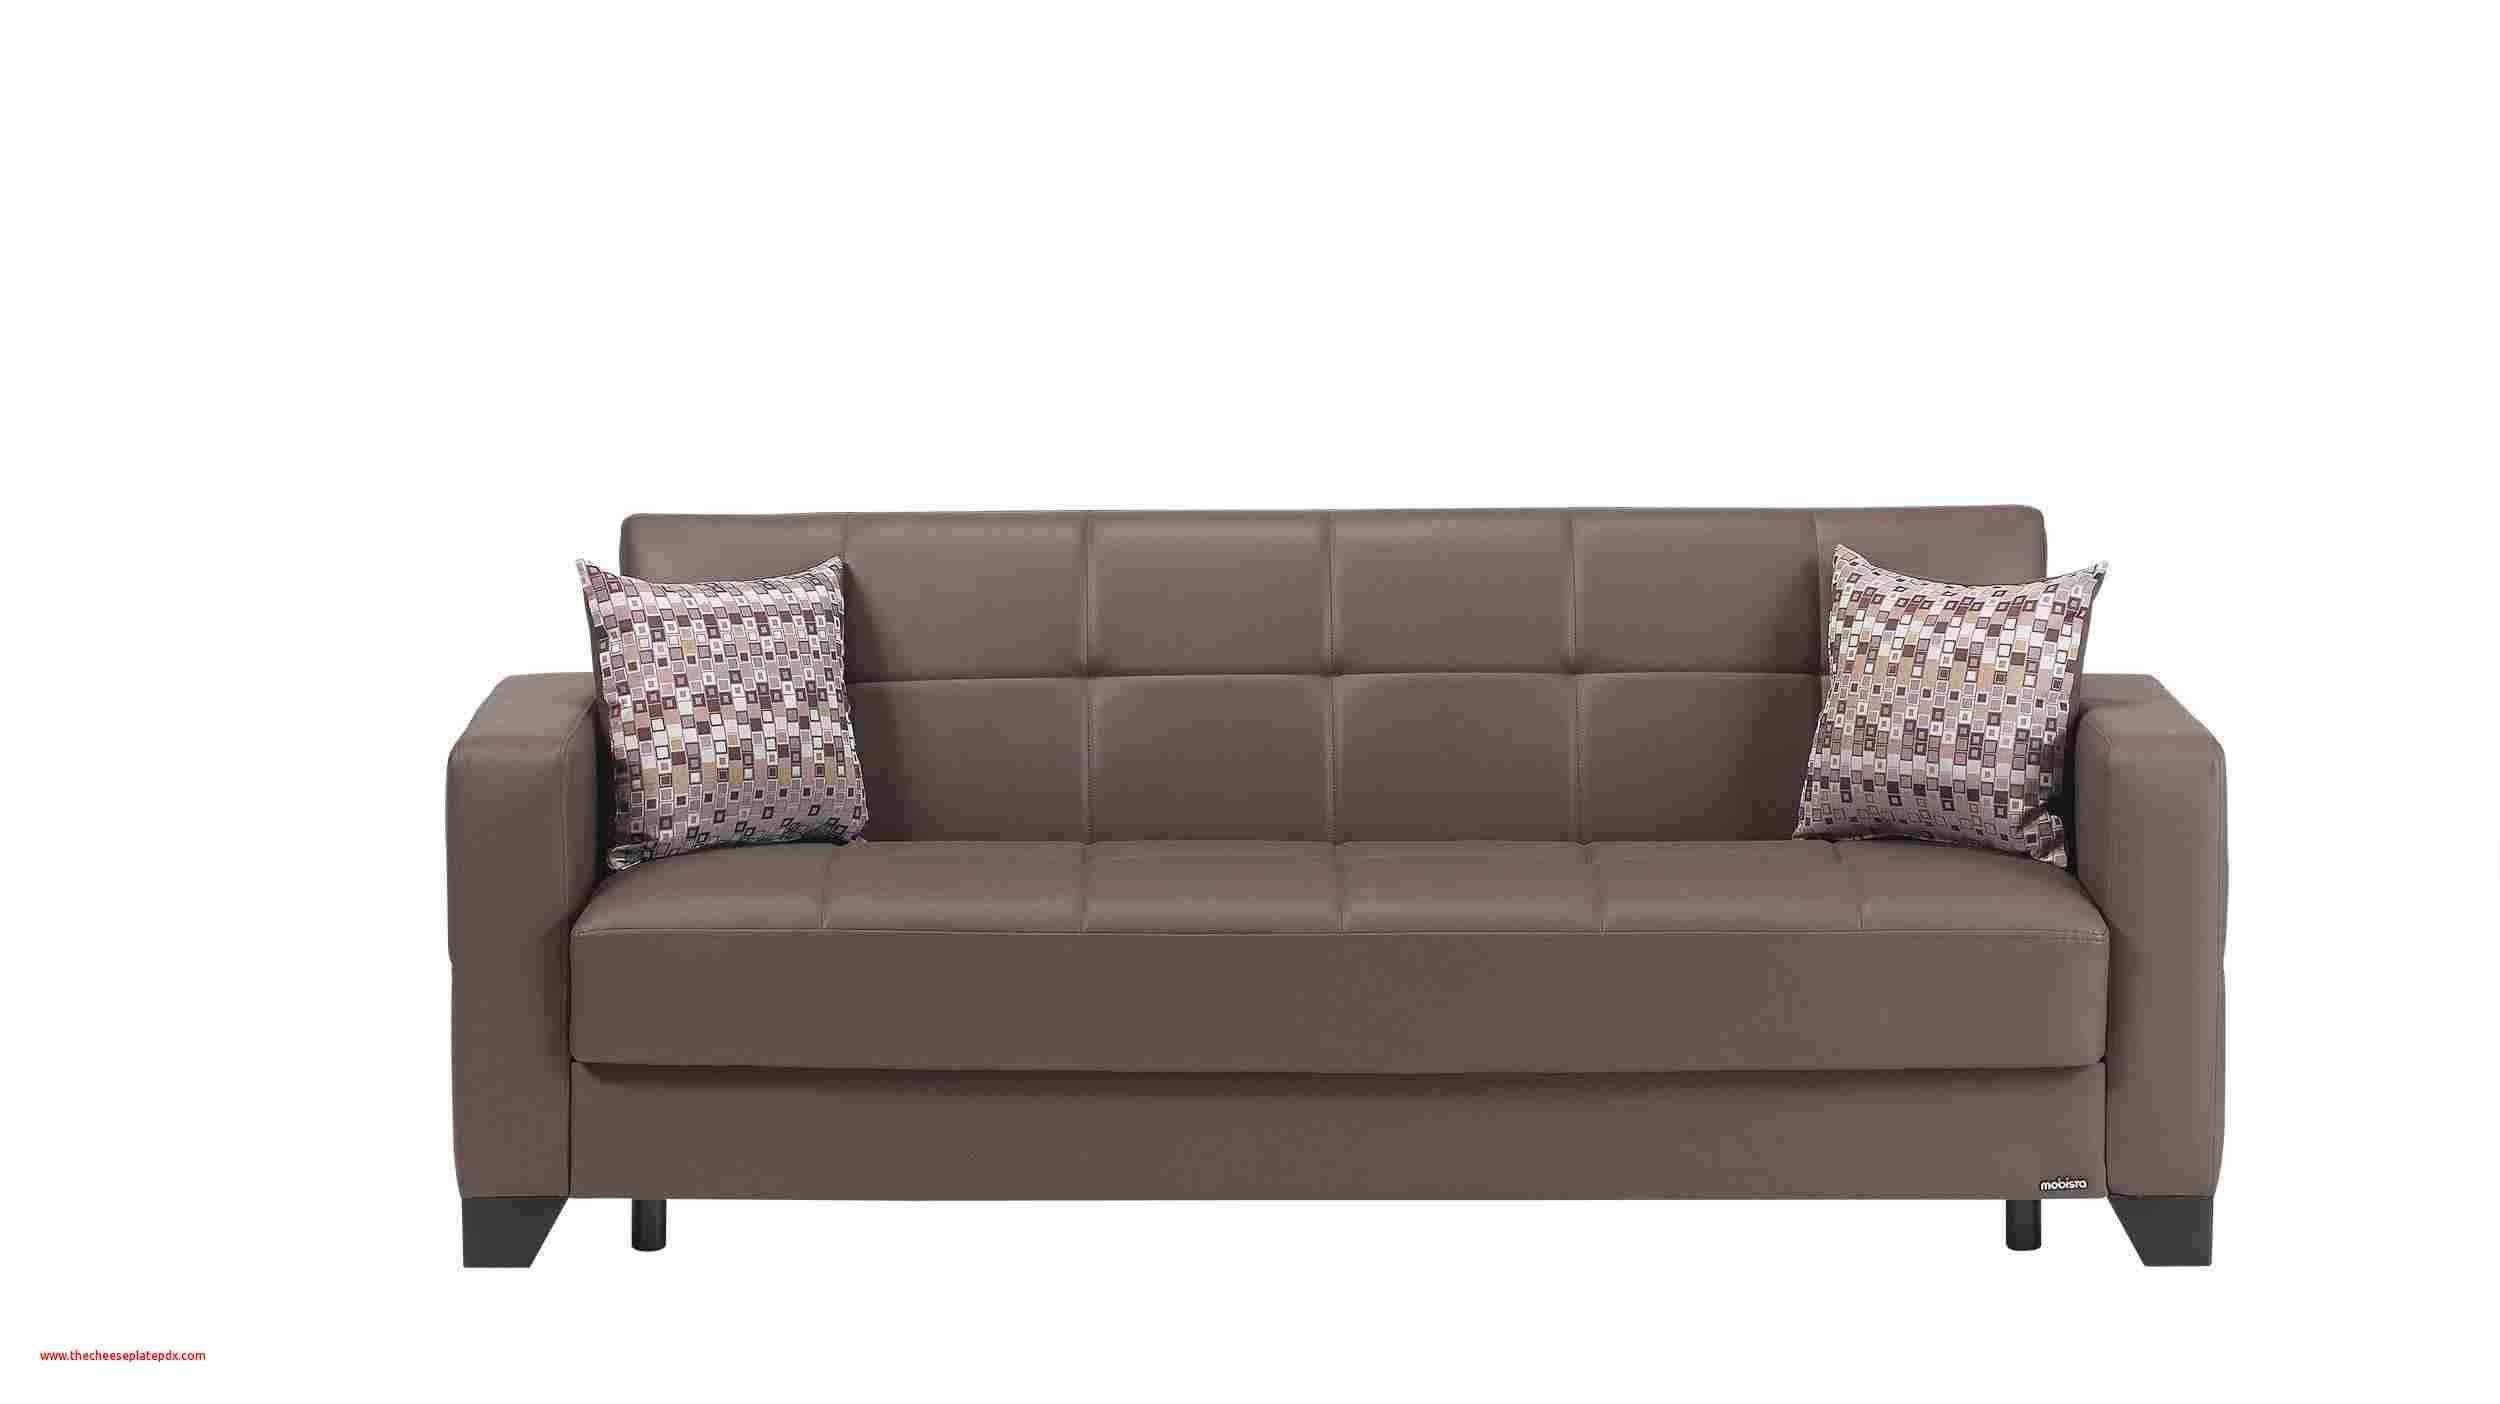 billig sofa kaufen einzigartig 45 einzigartig von sofa billig kaufen ideen of billig sofa kaufen